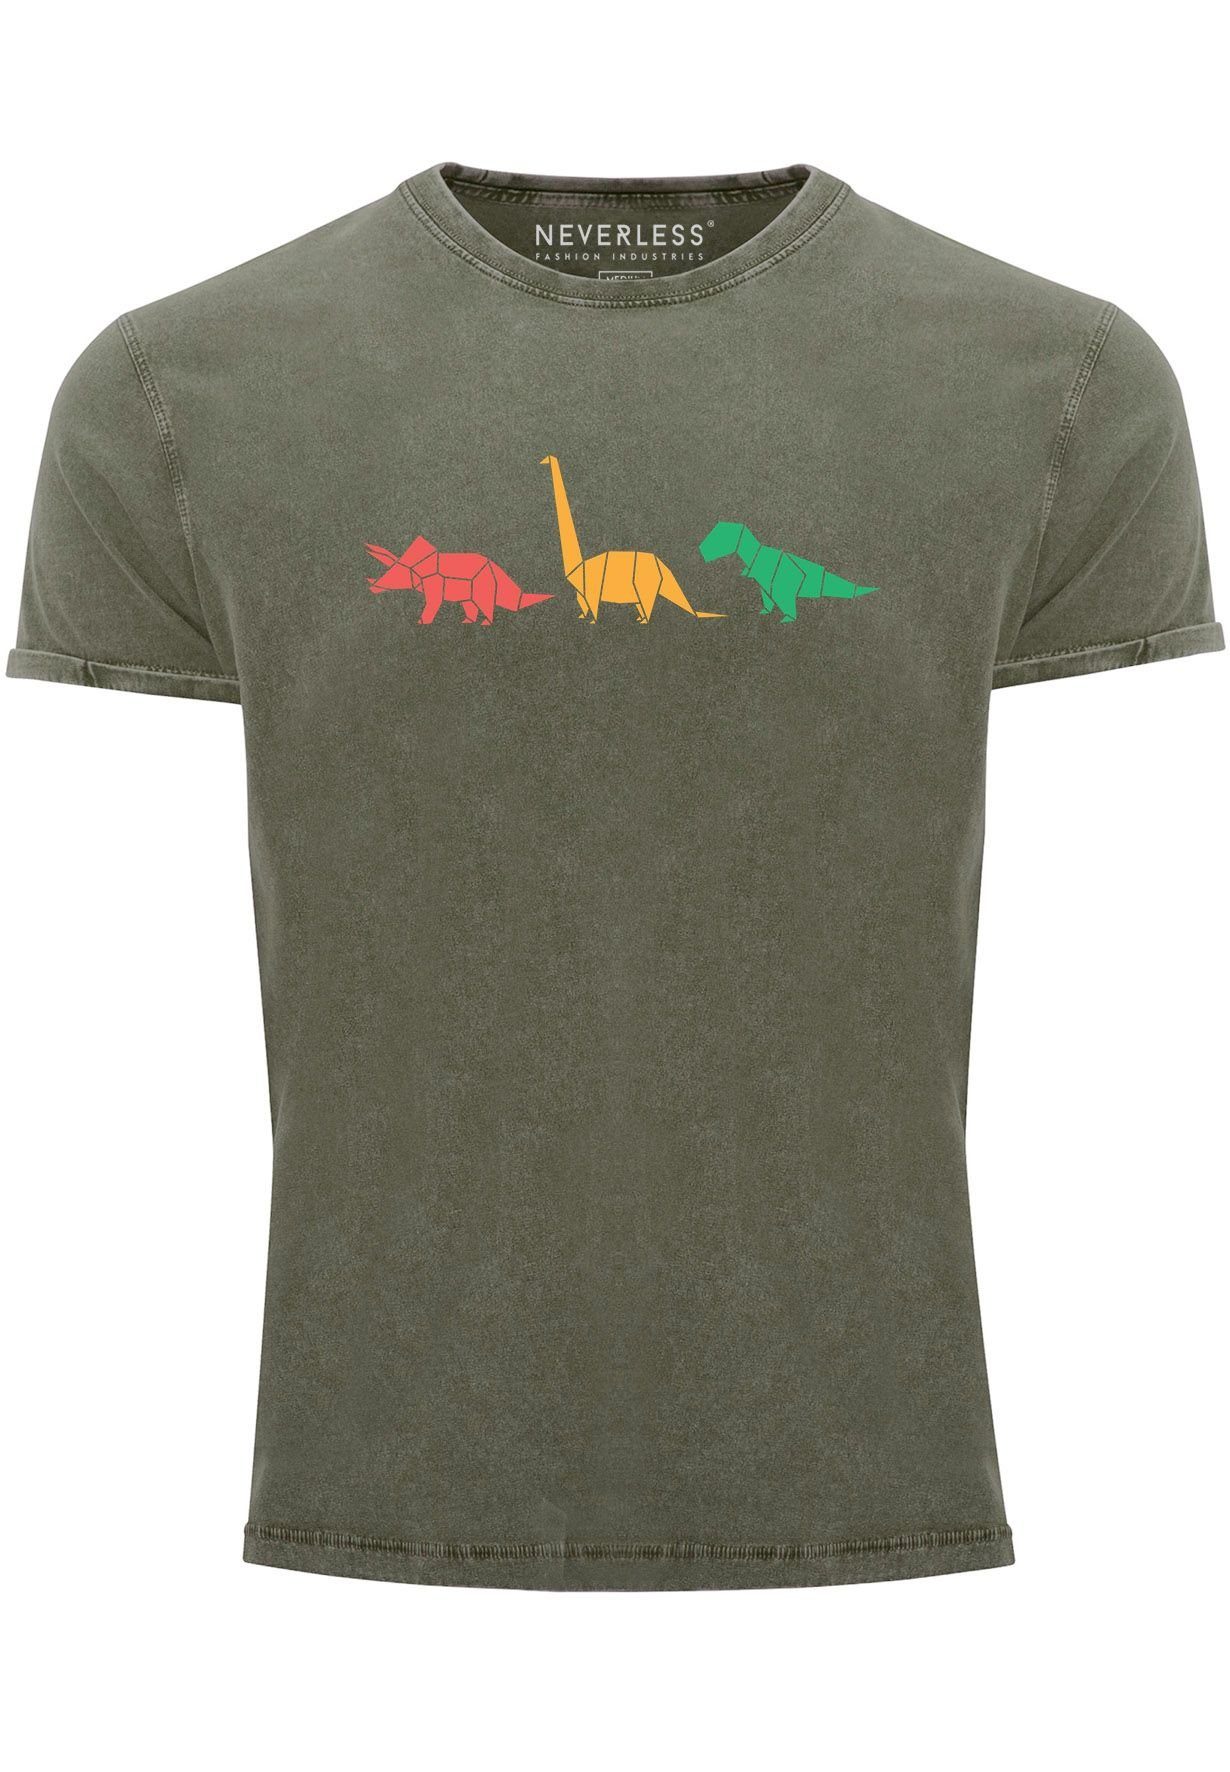 Neverless Print-Shirt Shirt oliv Vintage mit Prin Tiere Polygon Print Dinosaurier Aufdruck Herren Geometric